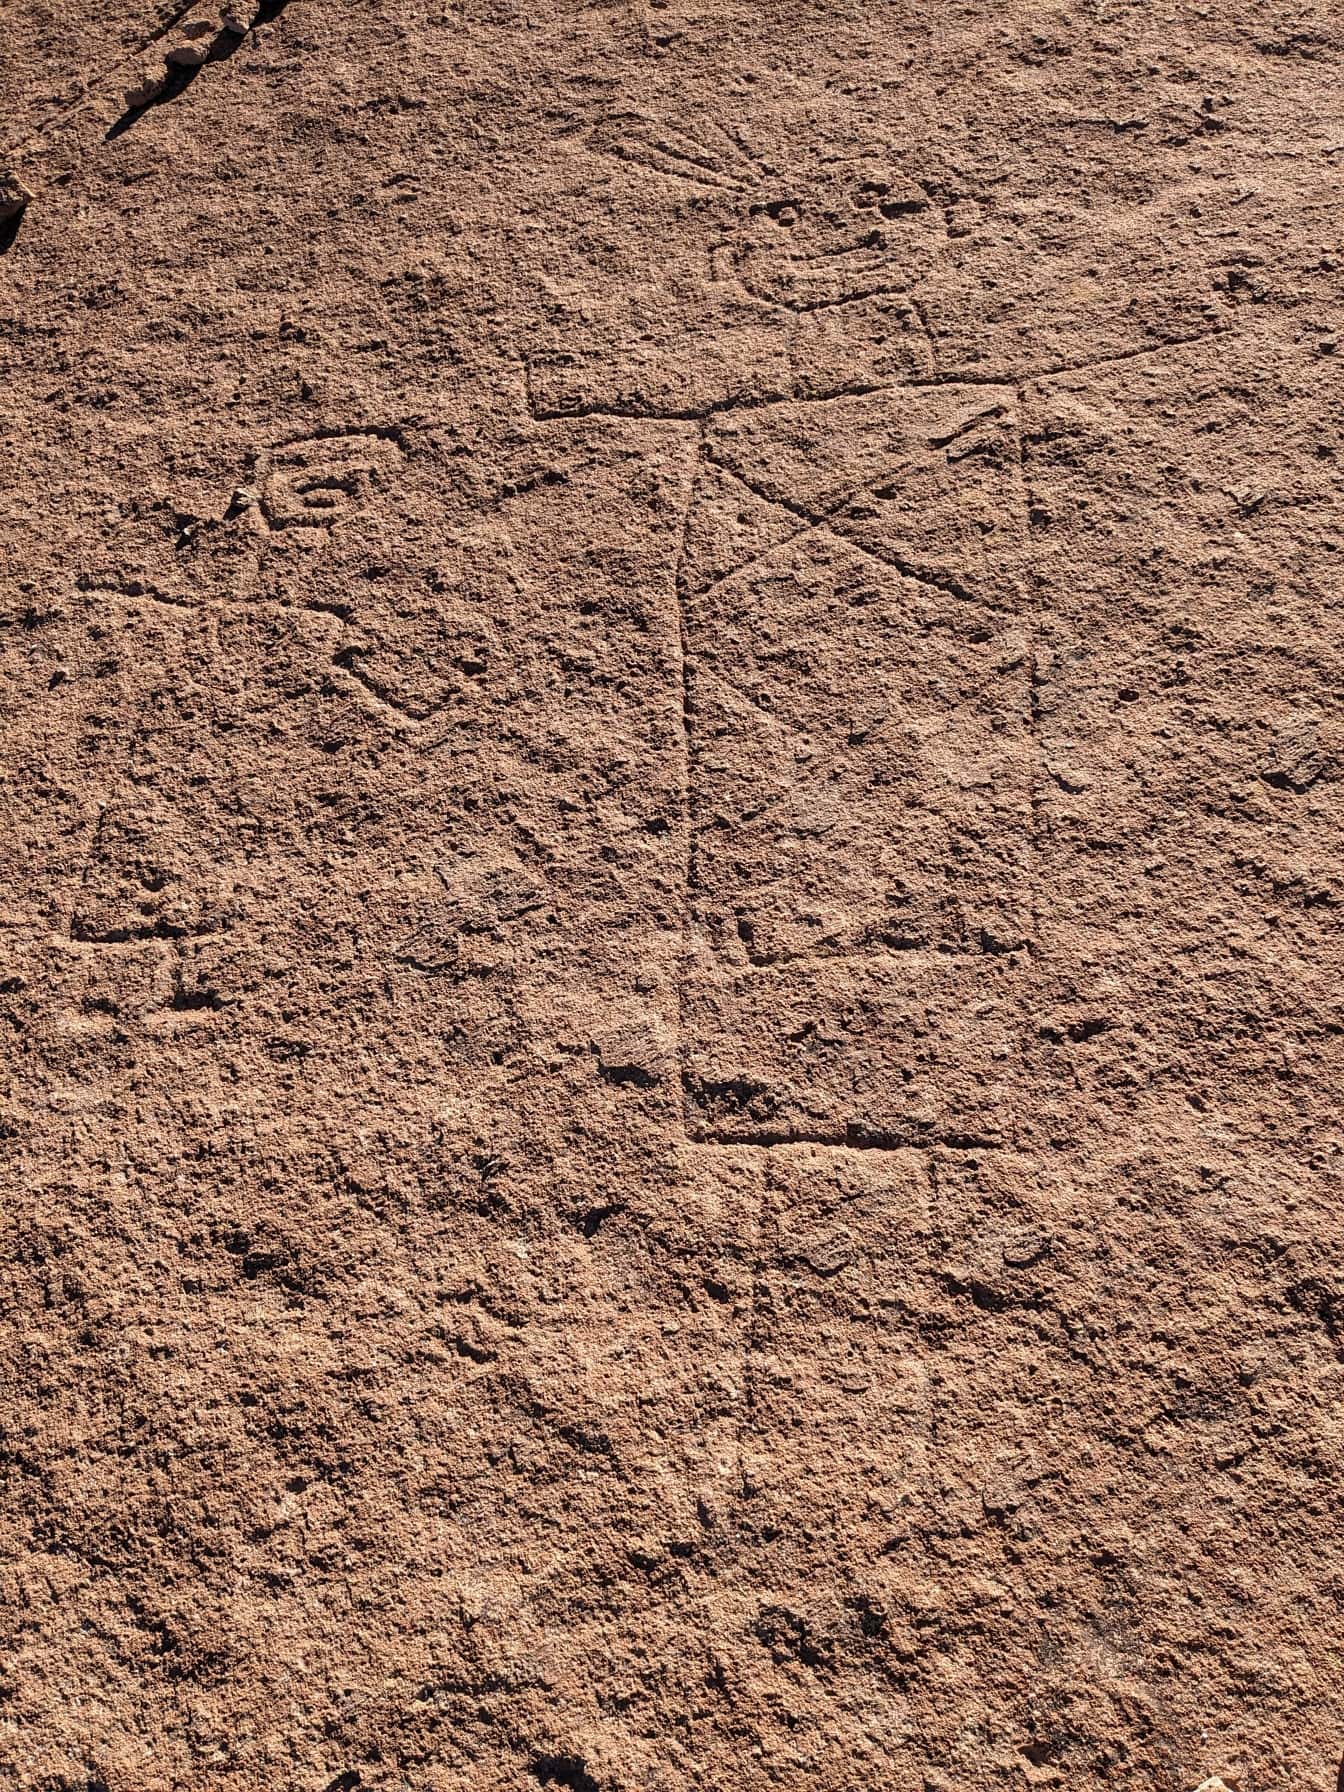 Antiche incisioni rupestri naif, un petroglifo simile alle linee di Nazca